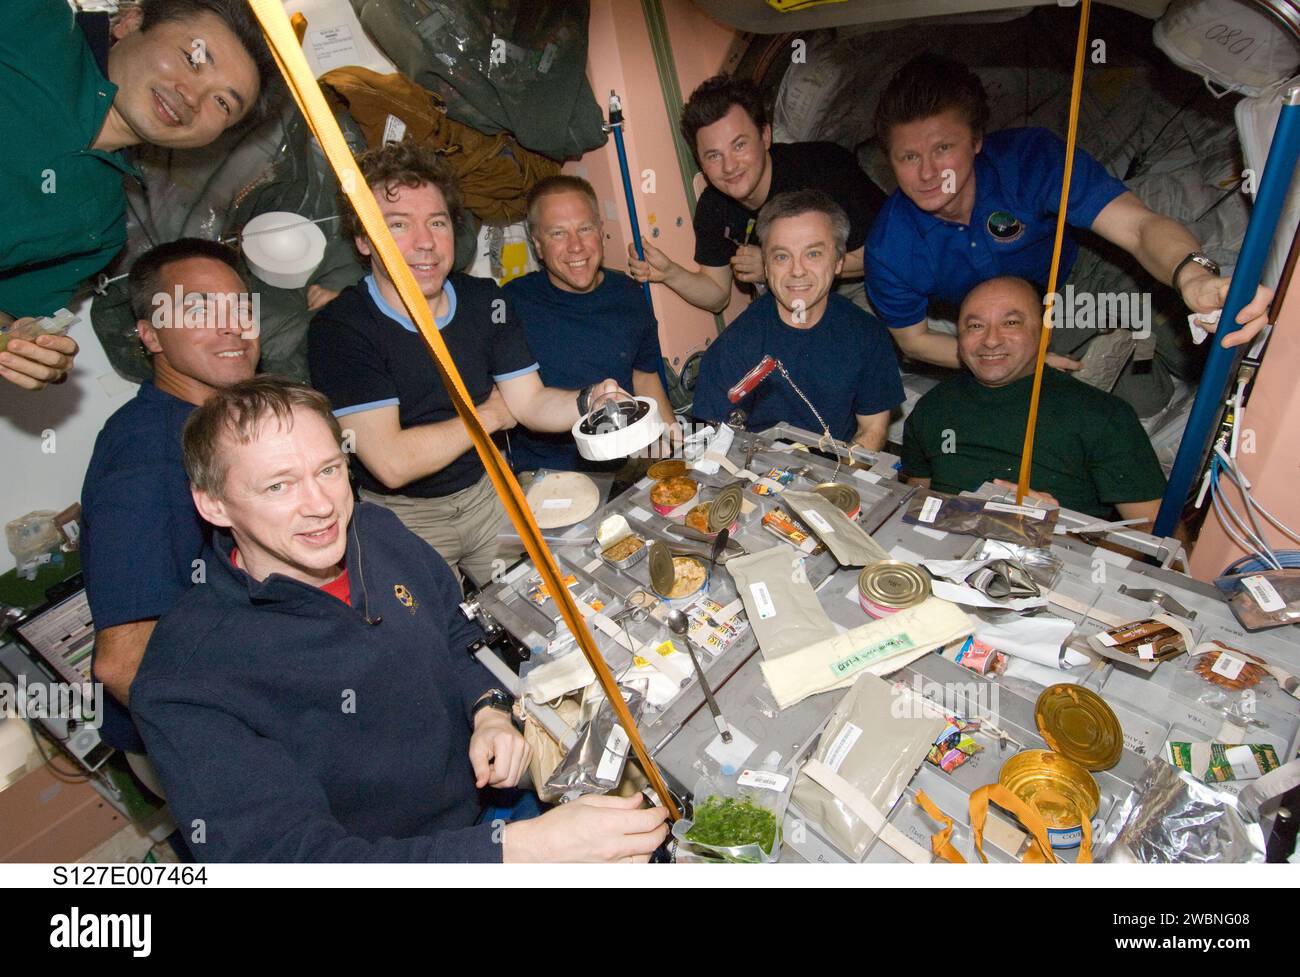 S127-E-007464 (21. Juli 2009) --- neun der insgesamt 13 Astronauten und Kosmonauten sind während der Mahlzeiten an Bord der Internationalen Raumstation abgebildet. Am Tisch sitzen im Uhrzeigersinn von unten links der Astronaut Frank de Winne, der Astronaut Christopher Cassidy, die Astronauten Mike Barratt und Tim Kopra sowie der Astronaut Robert Thirsk und Mark Polansky. Von links nach rechts oben sind der japanische Astronaut Koichi Wakata und die Kosmonauten Roman Romanenko und Gennady Padalka. Nicht p Stockfoto